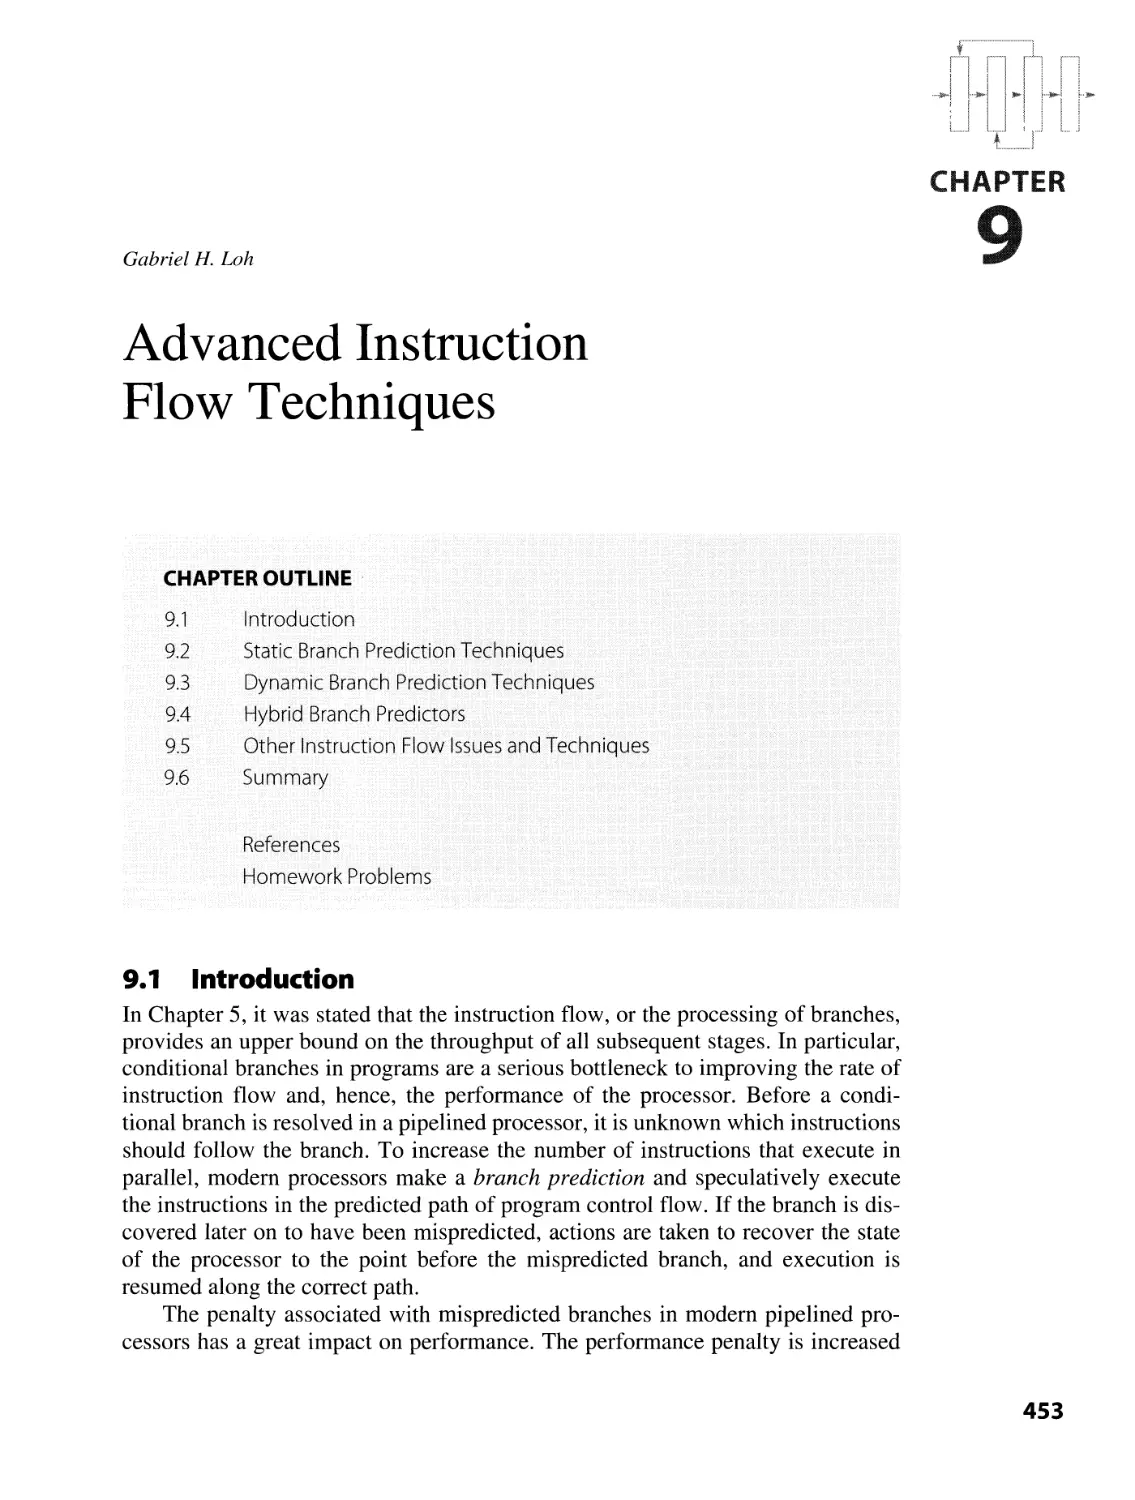 9. Advanced Instruction Flow Techniques
9.1 Introduction